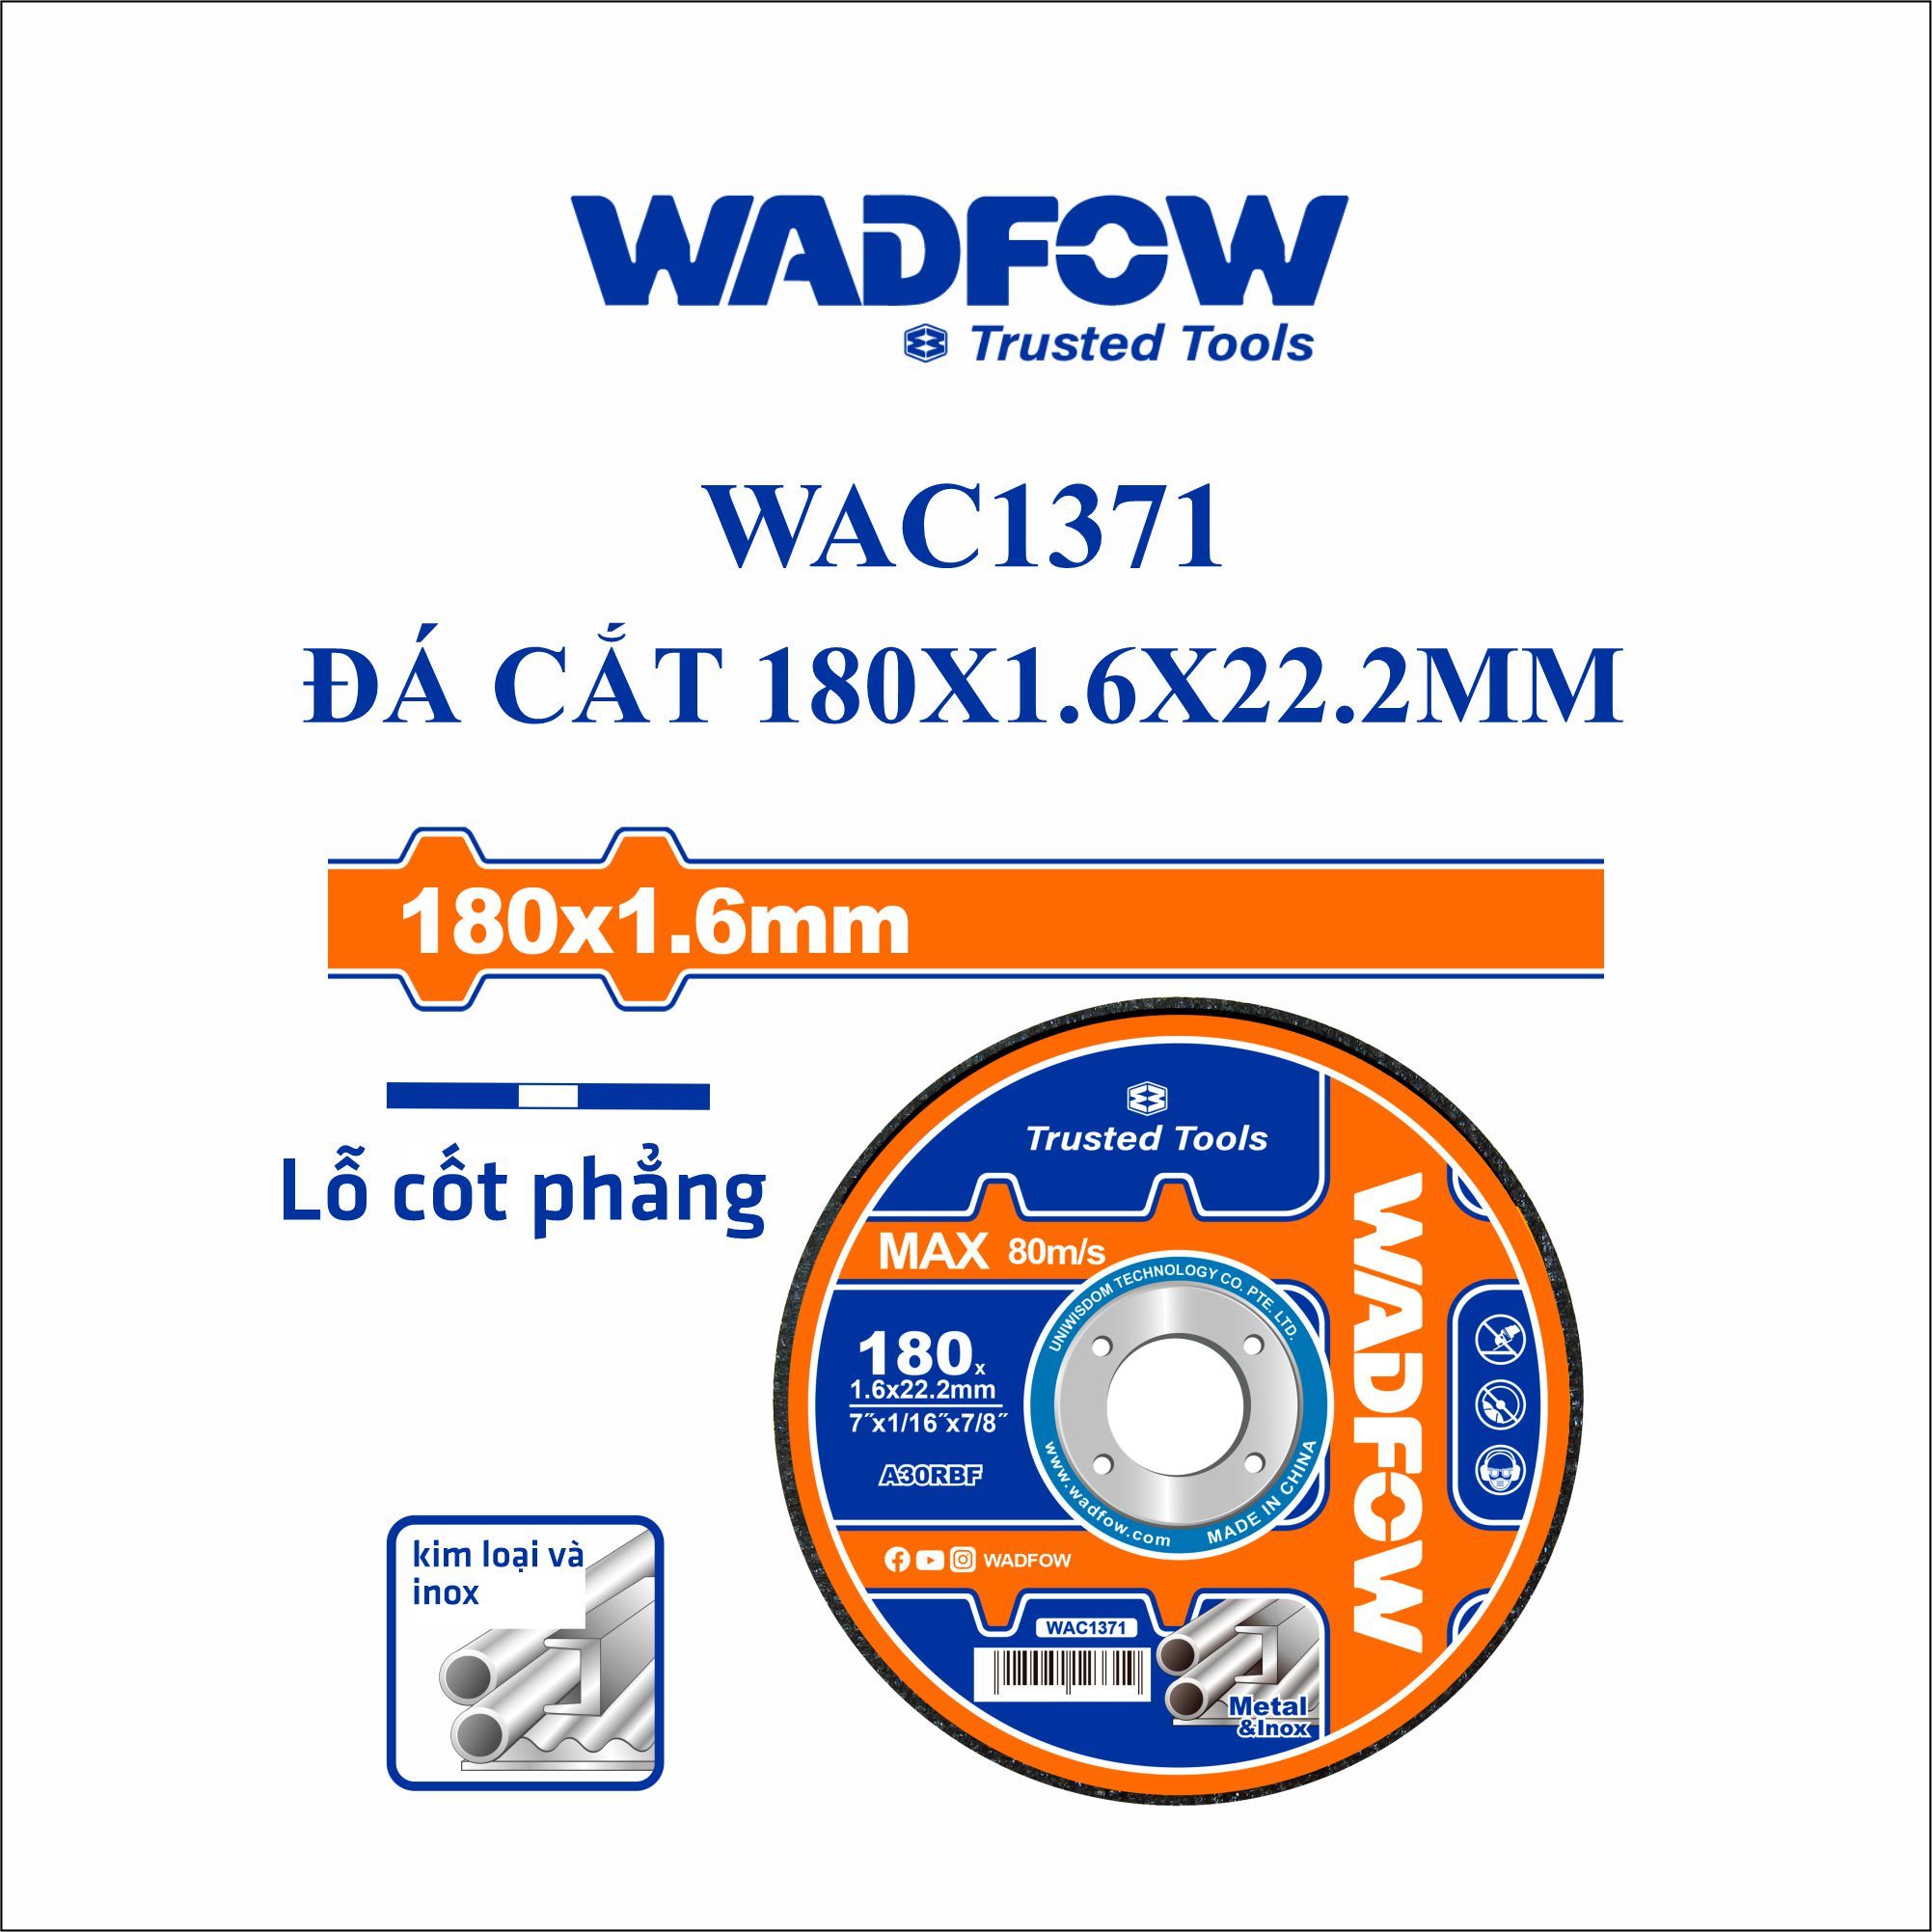  Đá cắt kim loại 180x1.6x22.2mm WADFOW WAC1371 